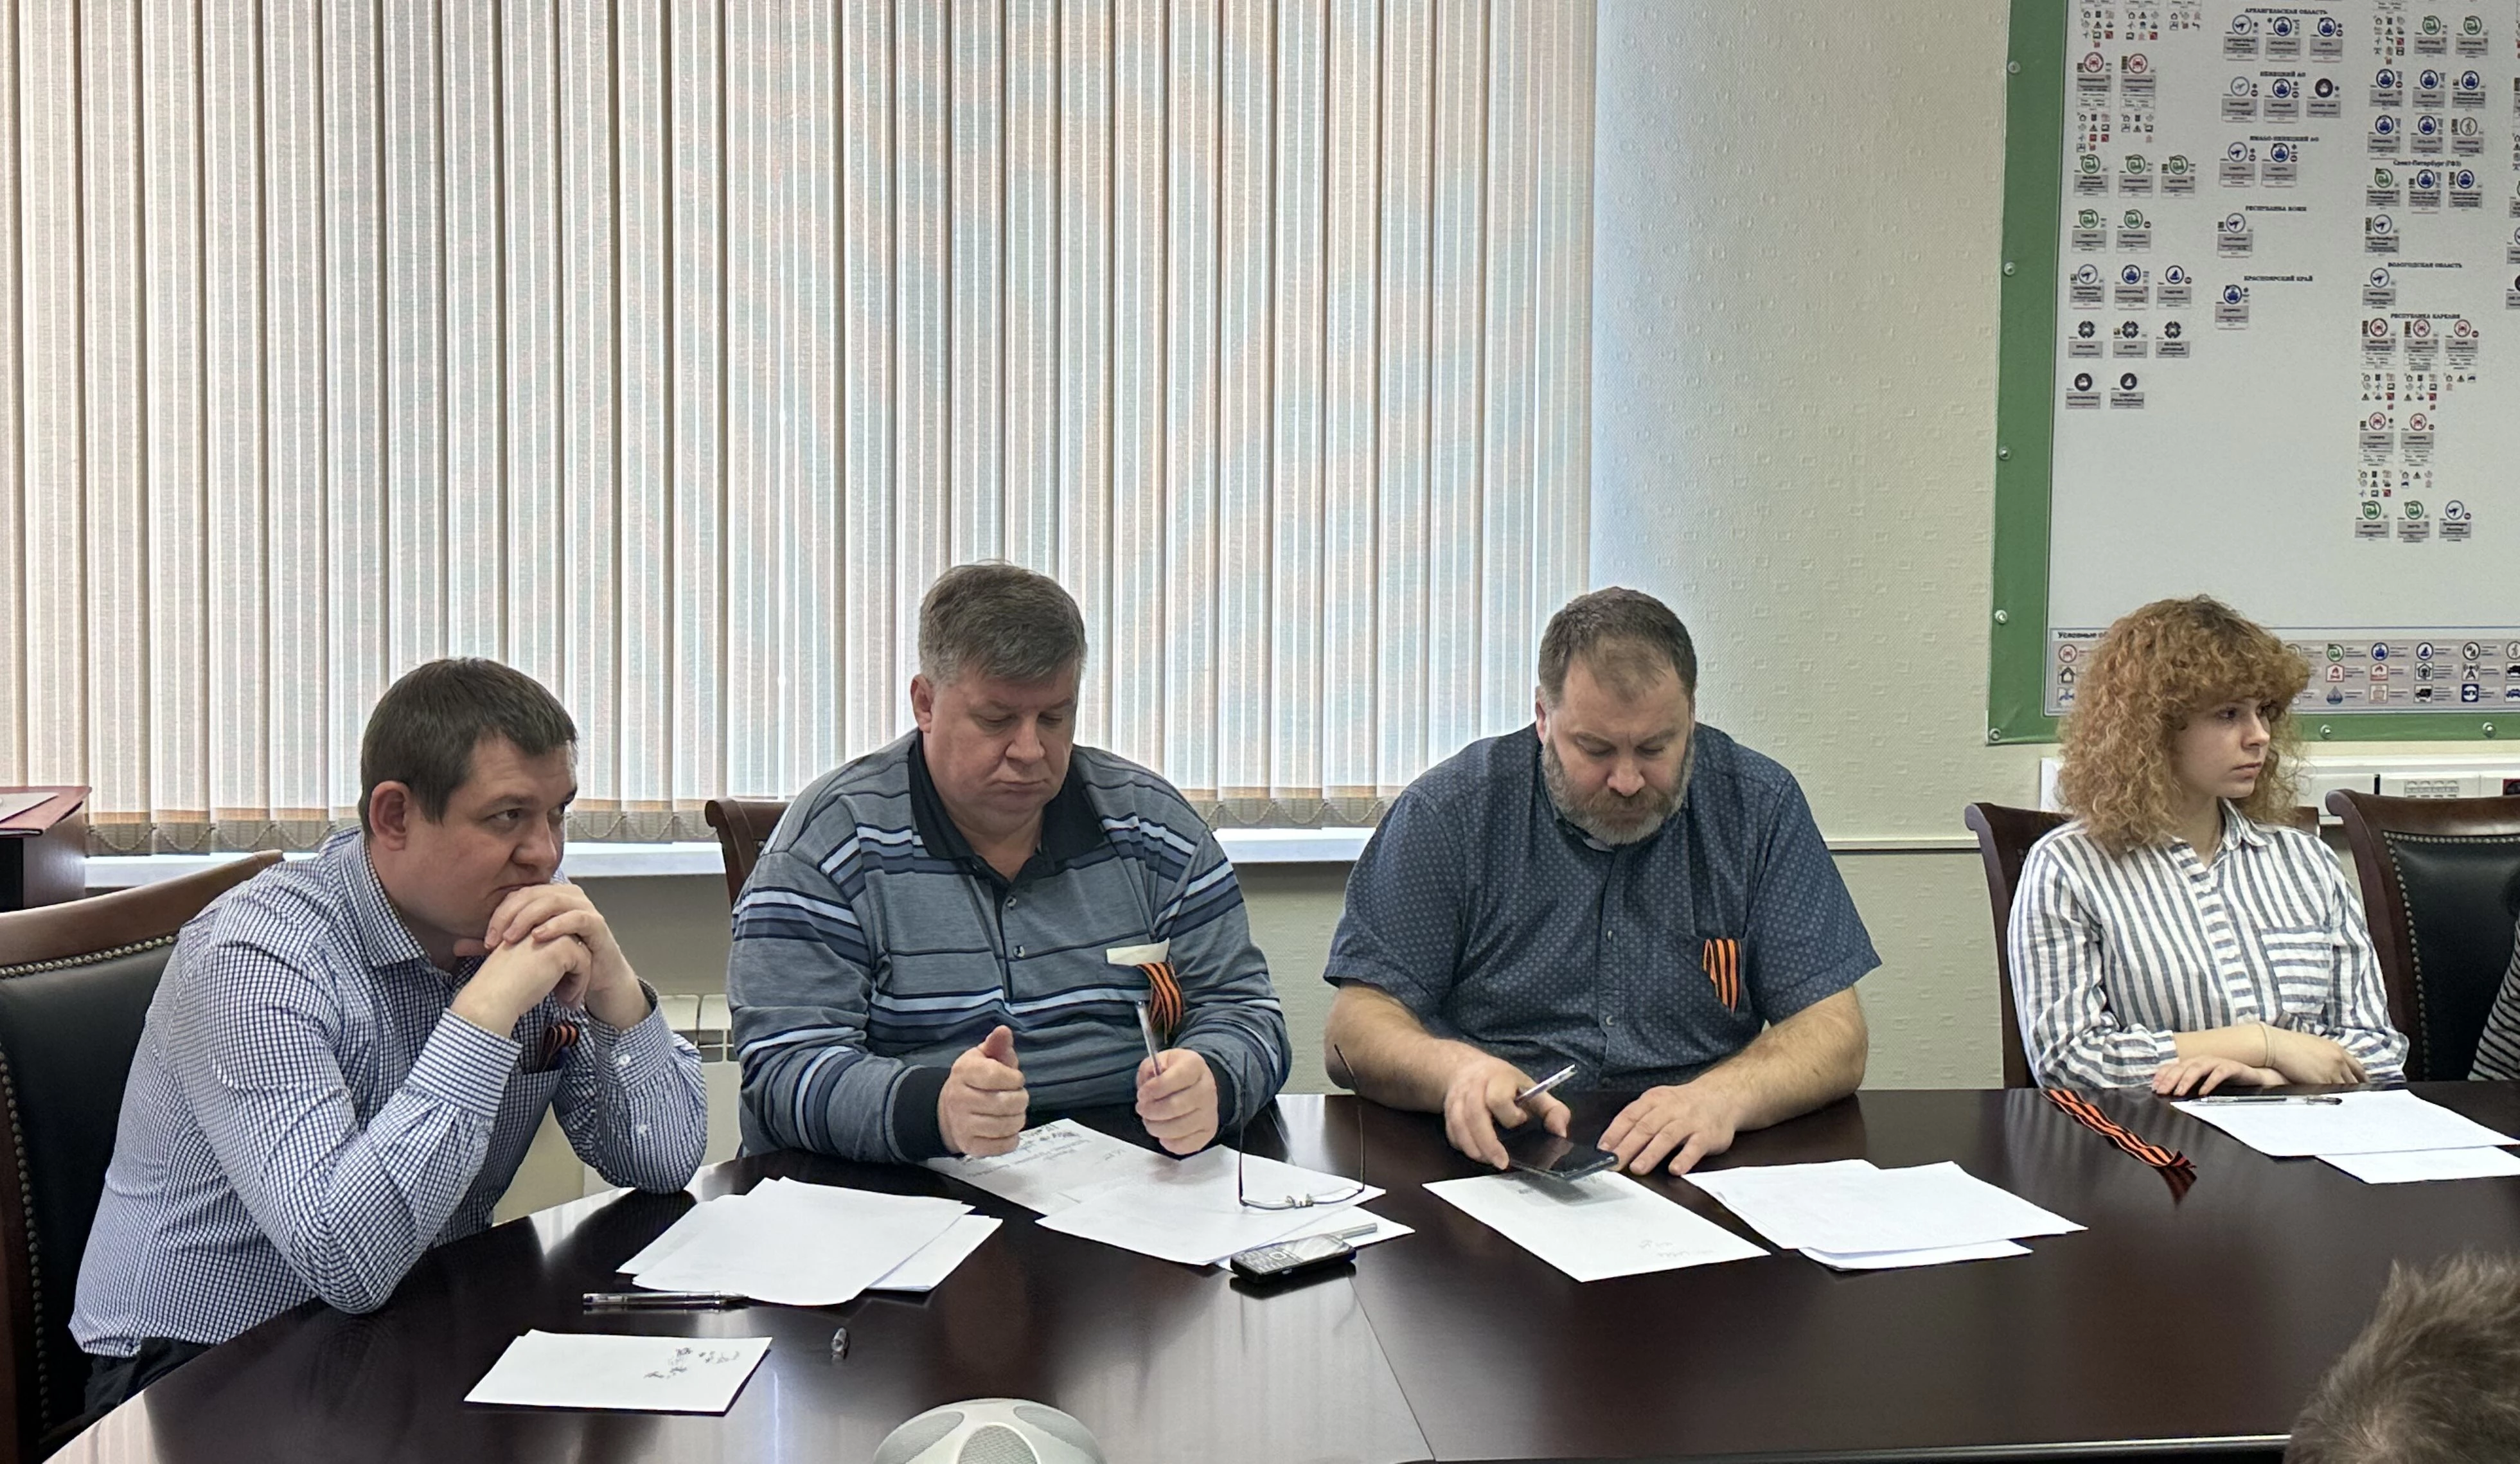 Сотрудники Росгранстроя приняли участие в патриотической акции «Диктант Победы»